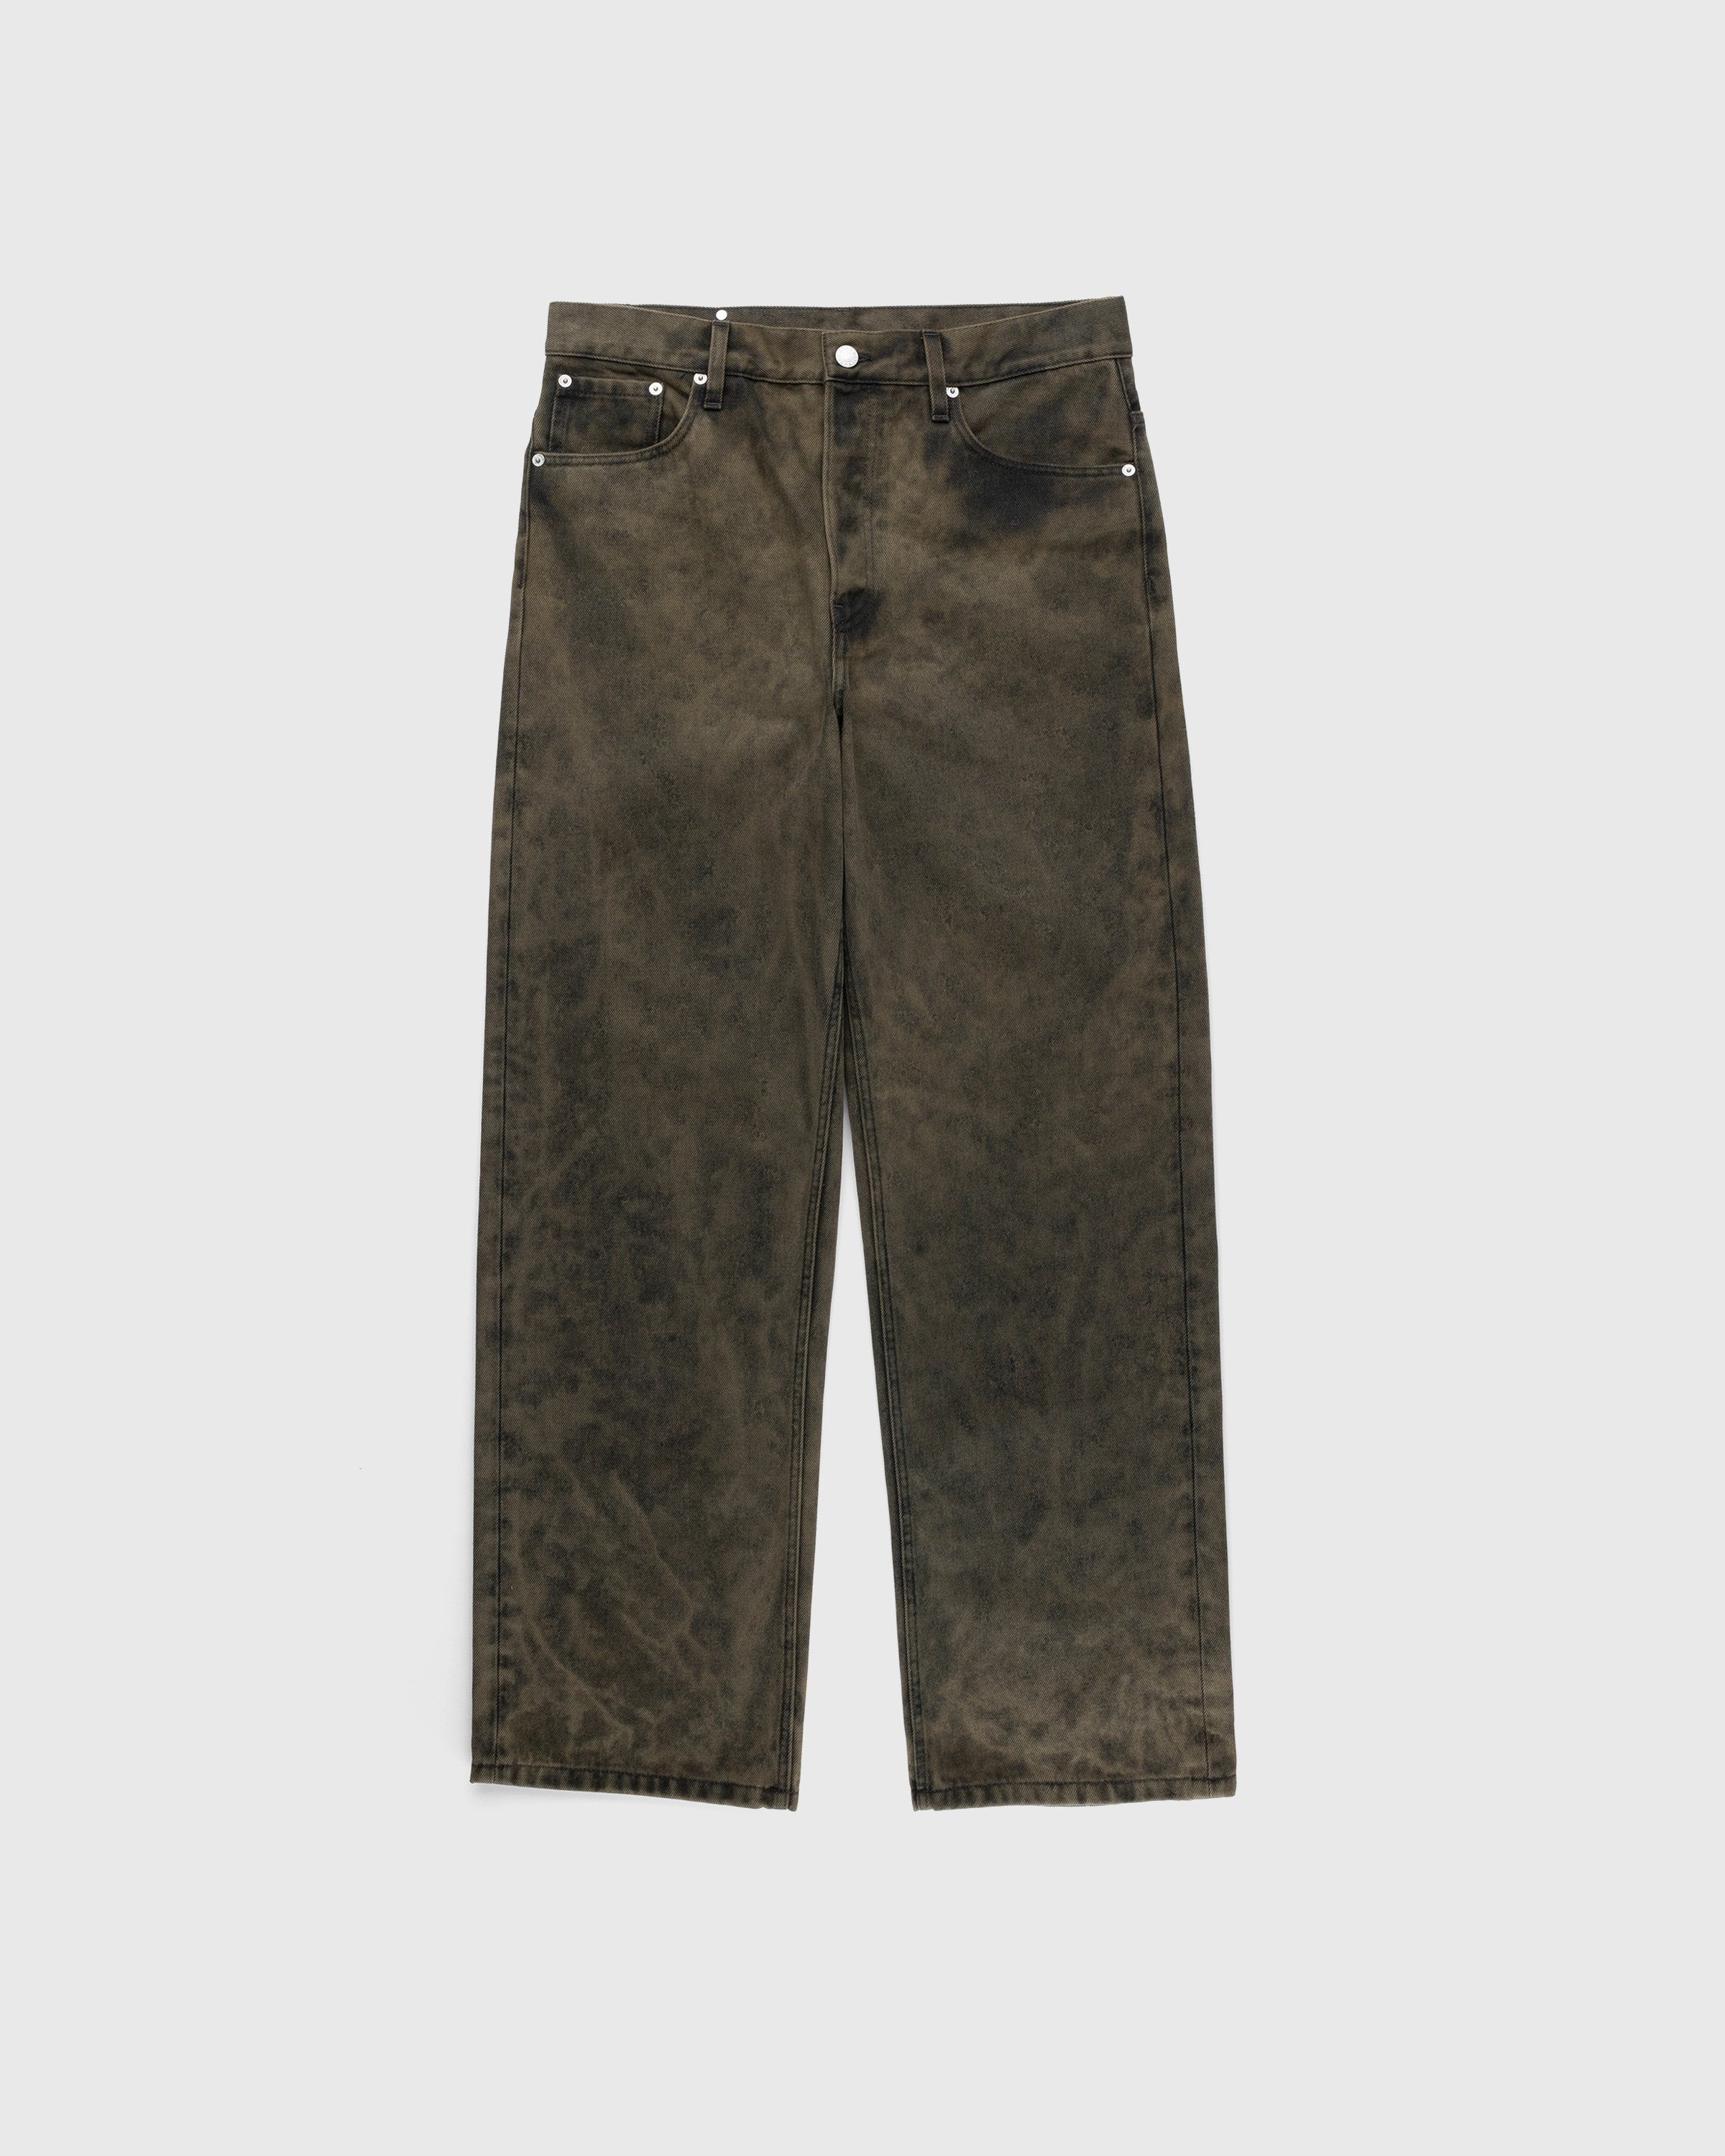 Dries van Noten - Pine Pants Khaki - Clothing - Green - Image 1